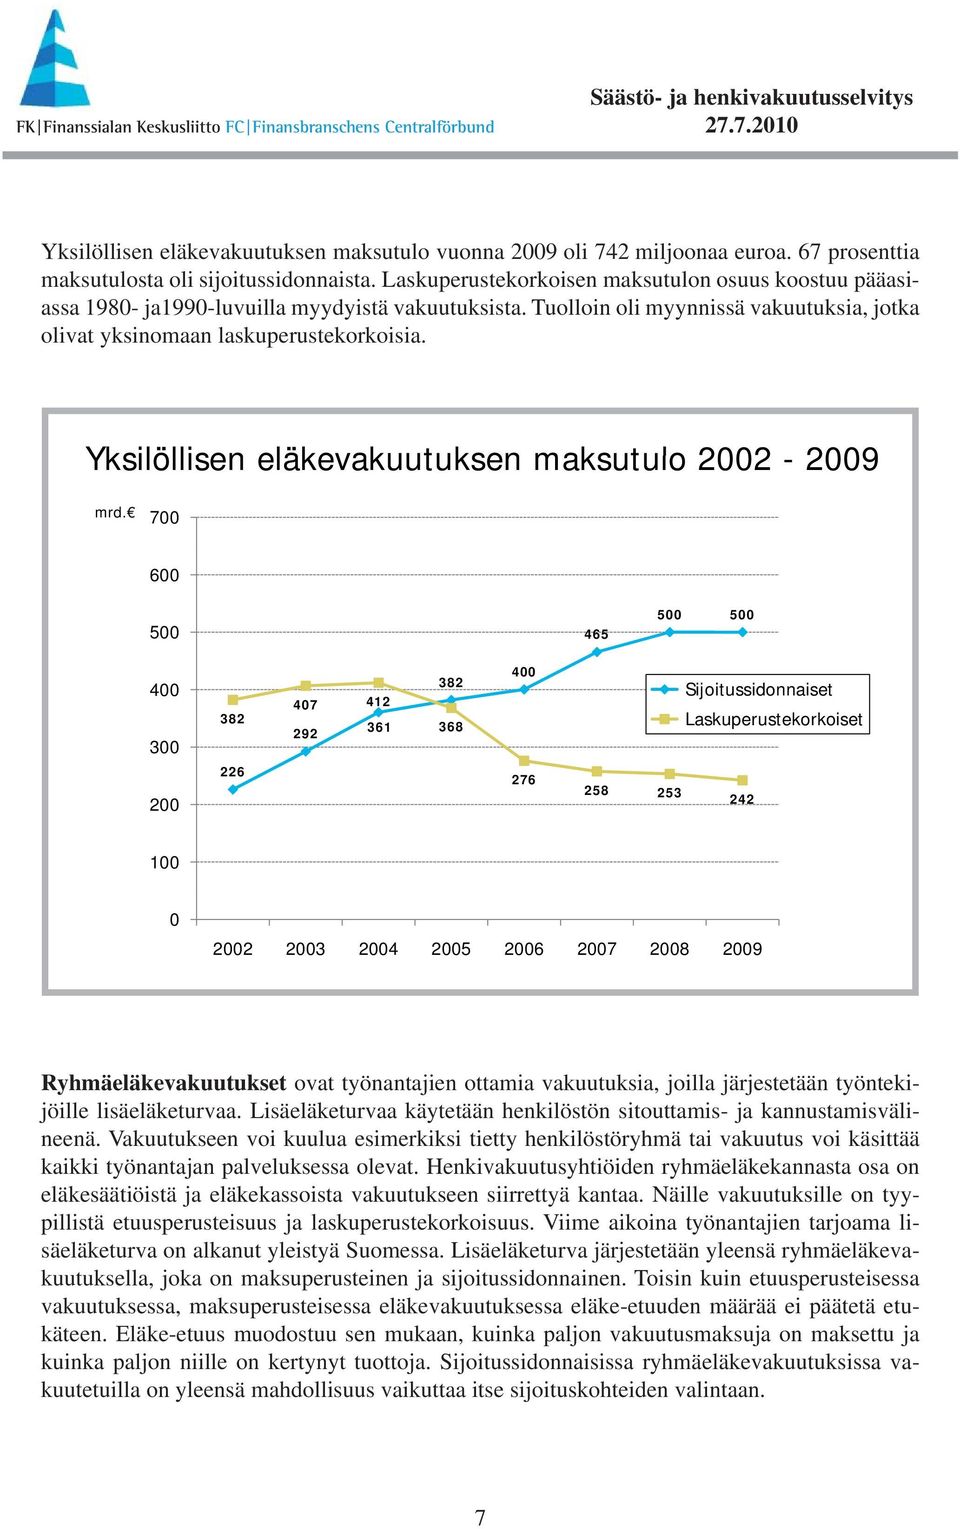 Yksilöllisen eläkevakuutuksen maksutulo 2002-2009 mrd.